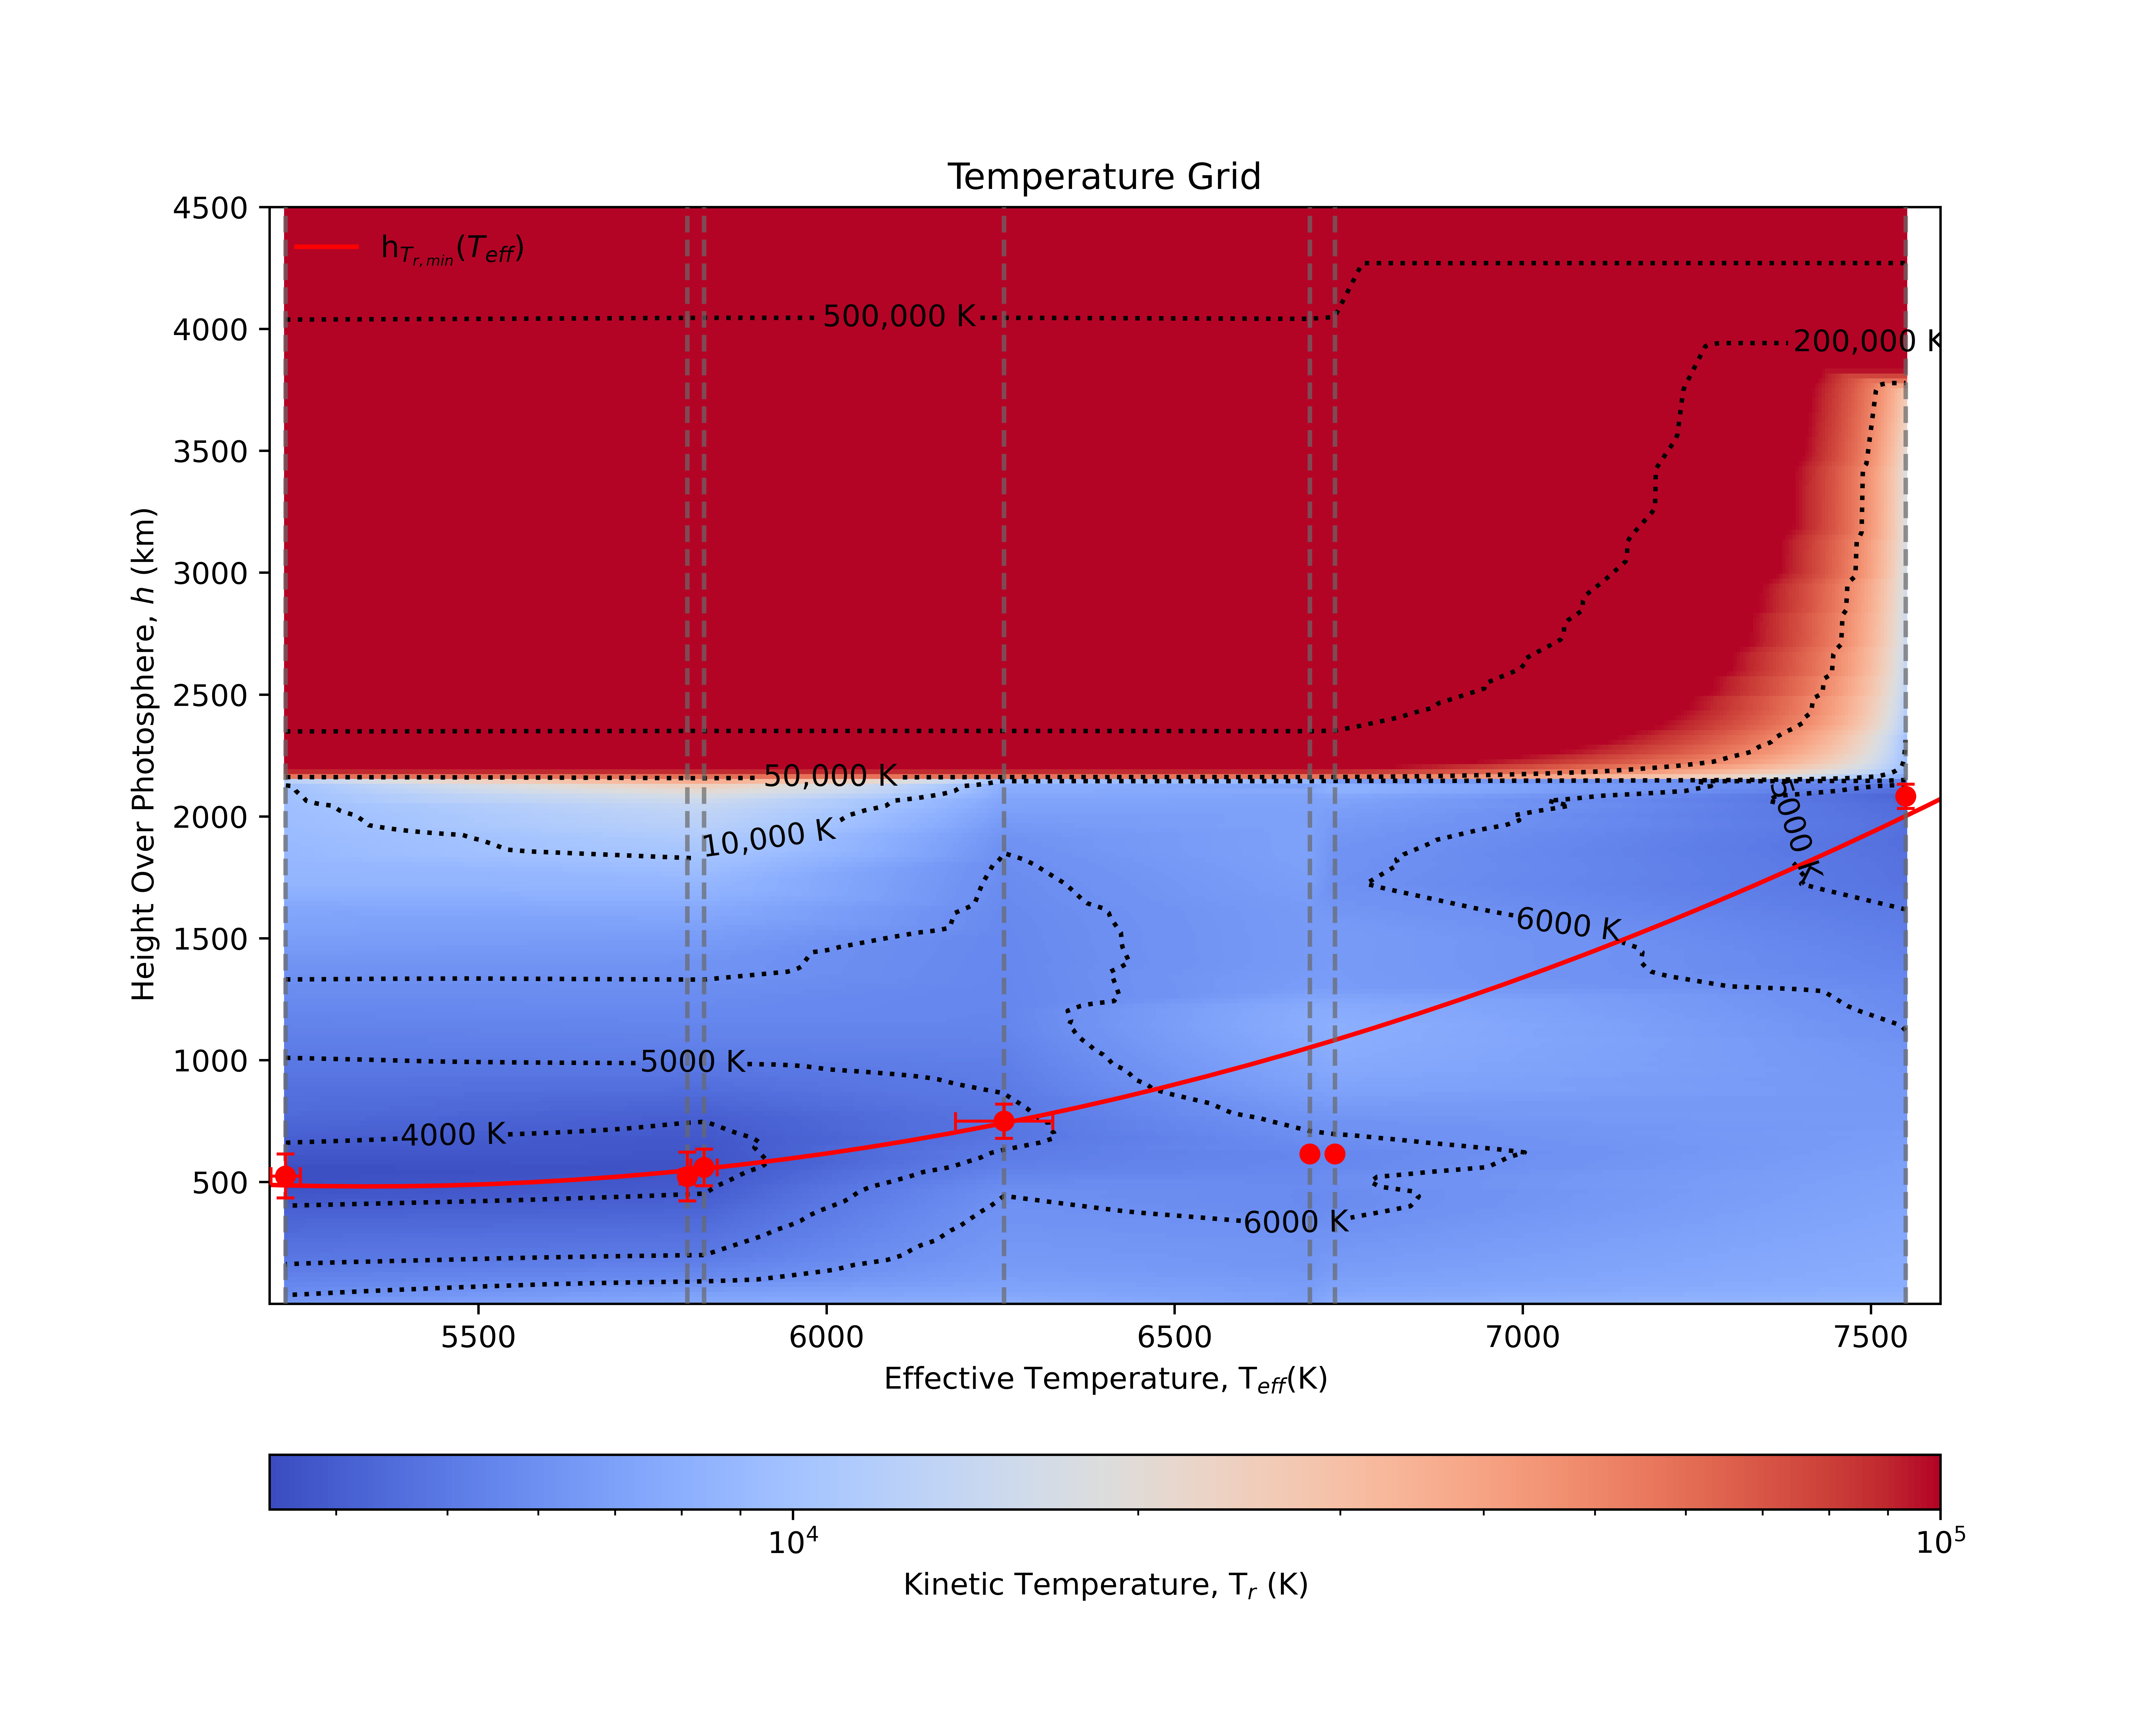 Figure 2. Malla de modelos semiempíricos. La línea roja indica la relación entre el mínimo de temperatura y la temperatura efectiva de la estrella. 